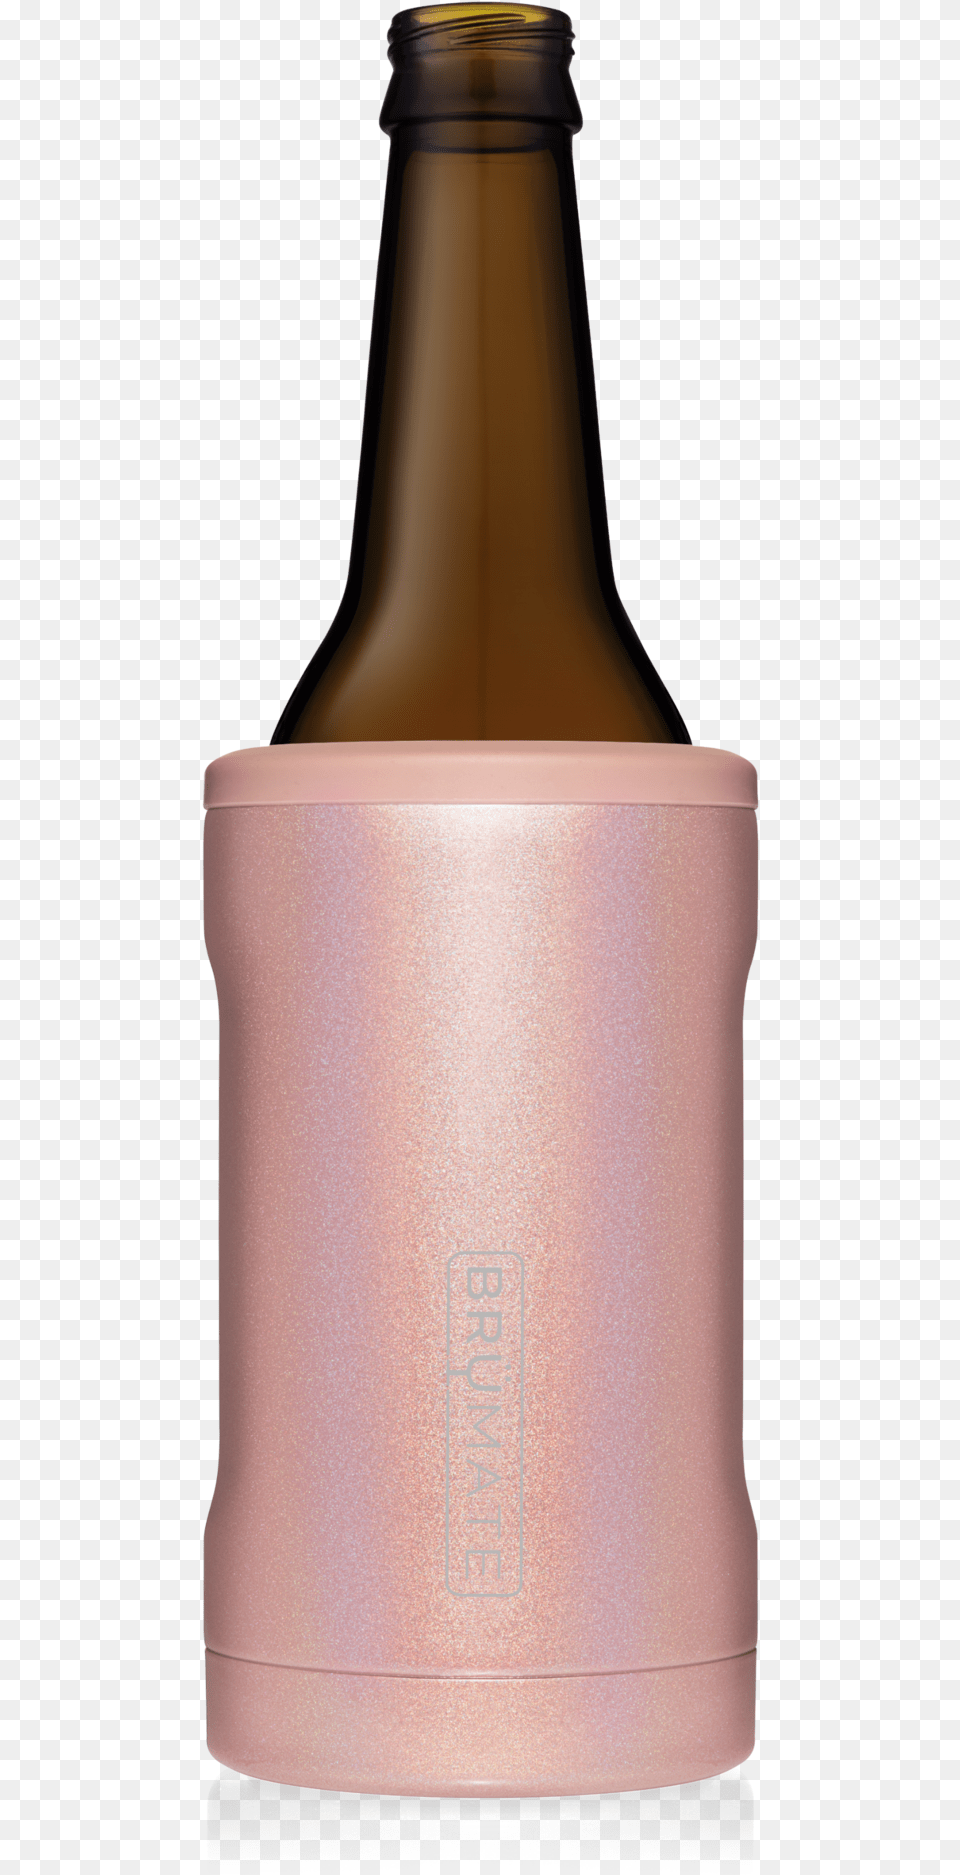 Brumate Rose Gold, Alcohol, Beer, Beverage, Bottle Png Image